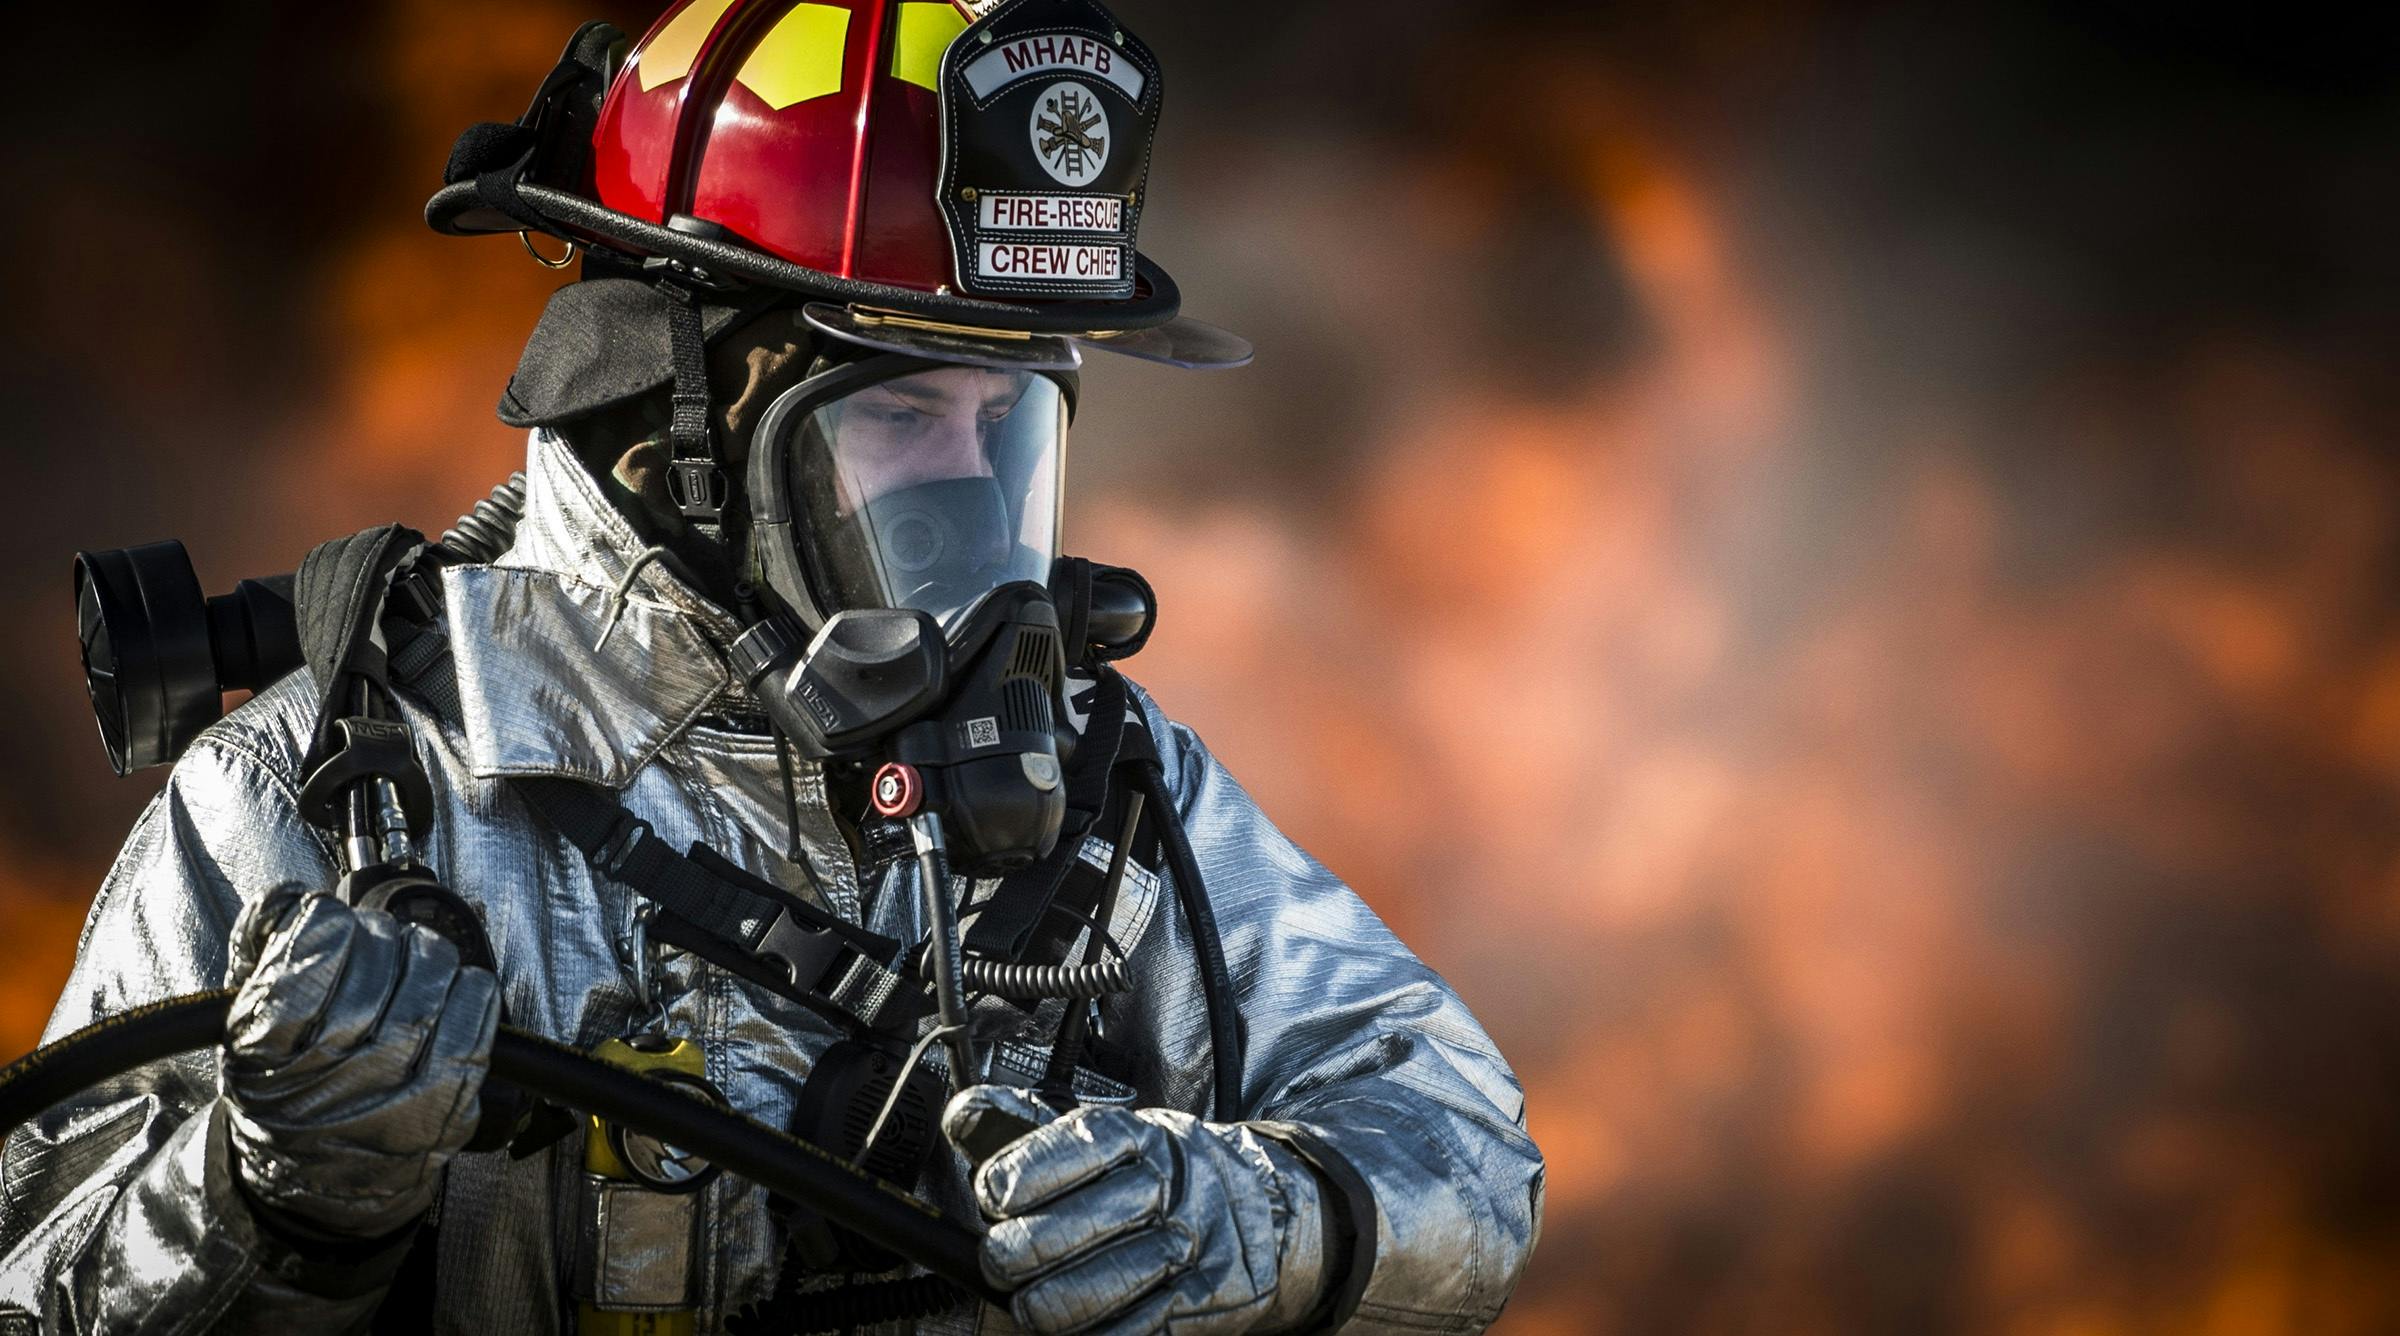 Hình tượng người lính cứu hỏa được khắc họa đậm nét qua cuộc thi PCCCCNCH   Báo Dân trí